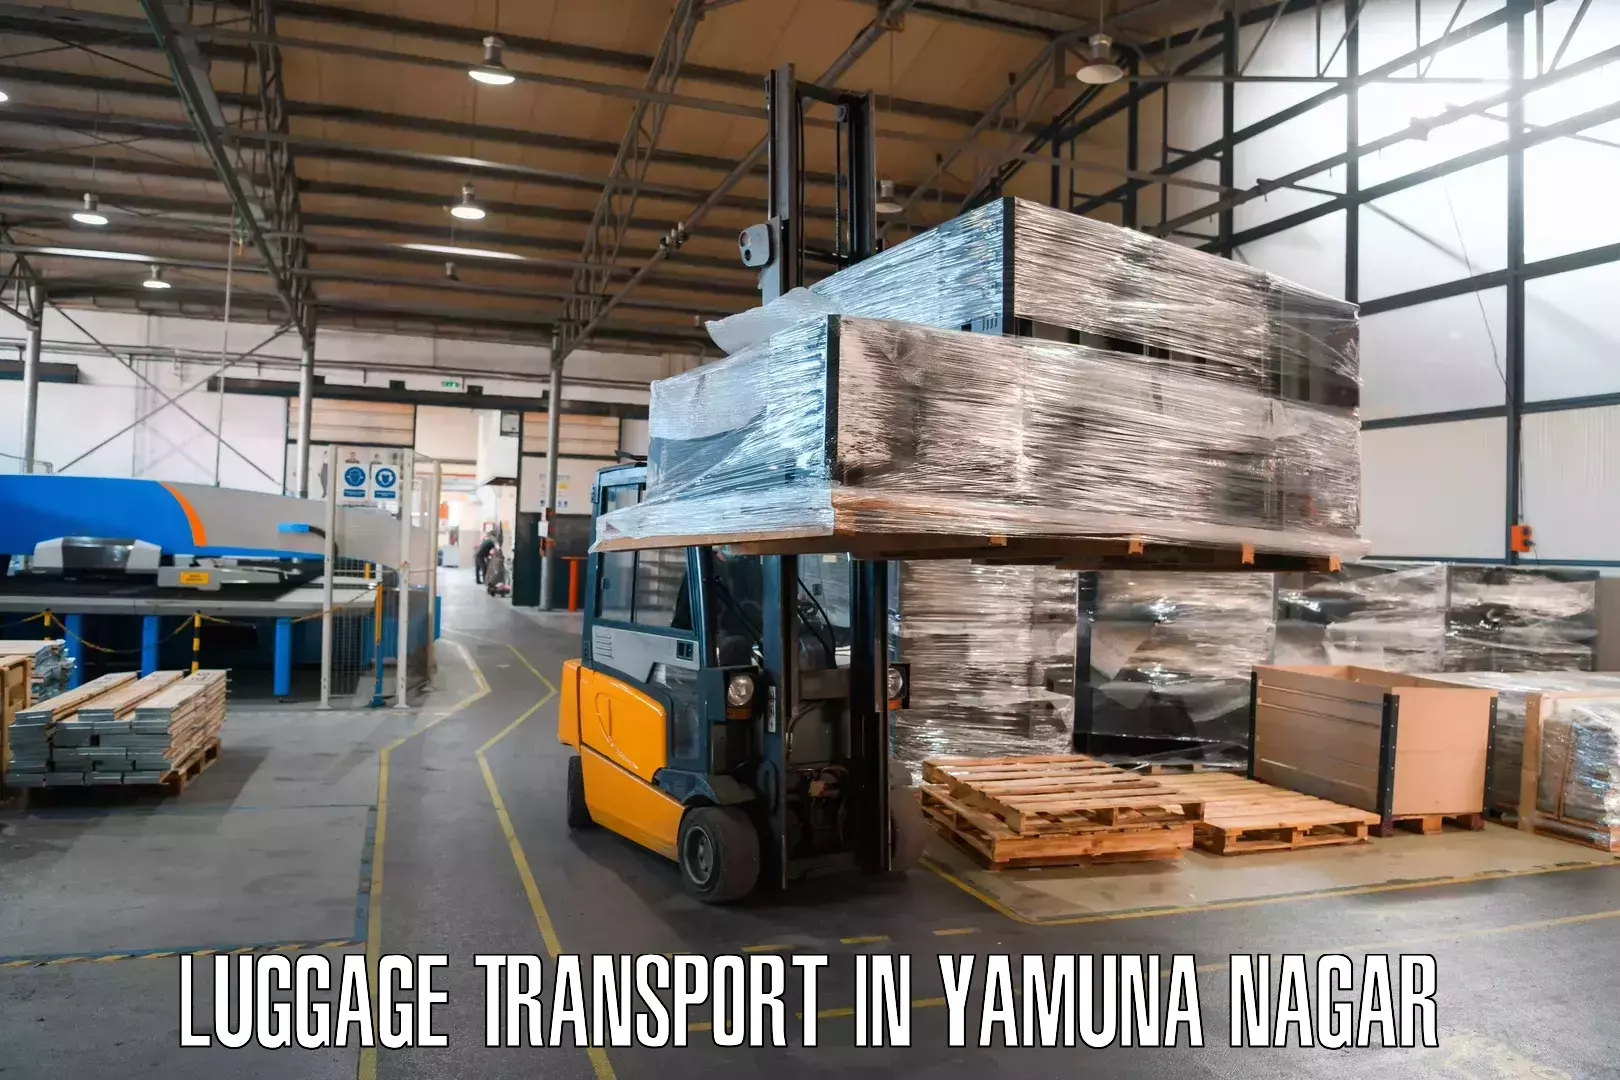 Luggage shipping service in Yamuna Nagar